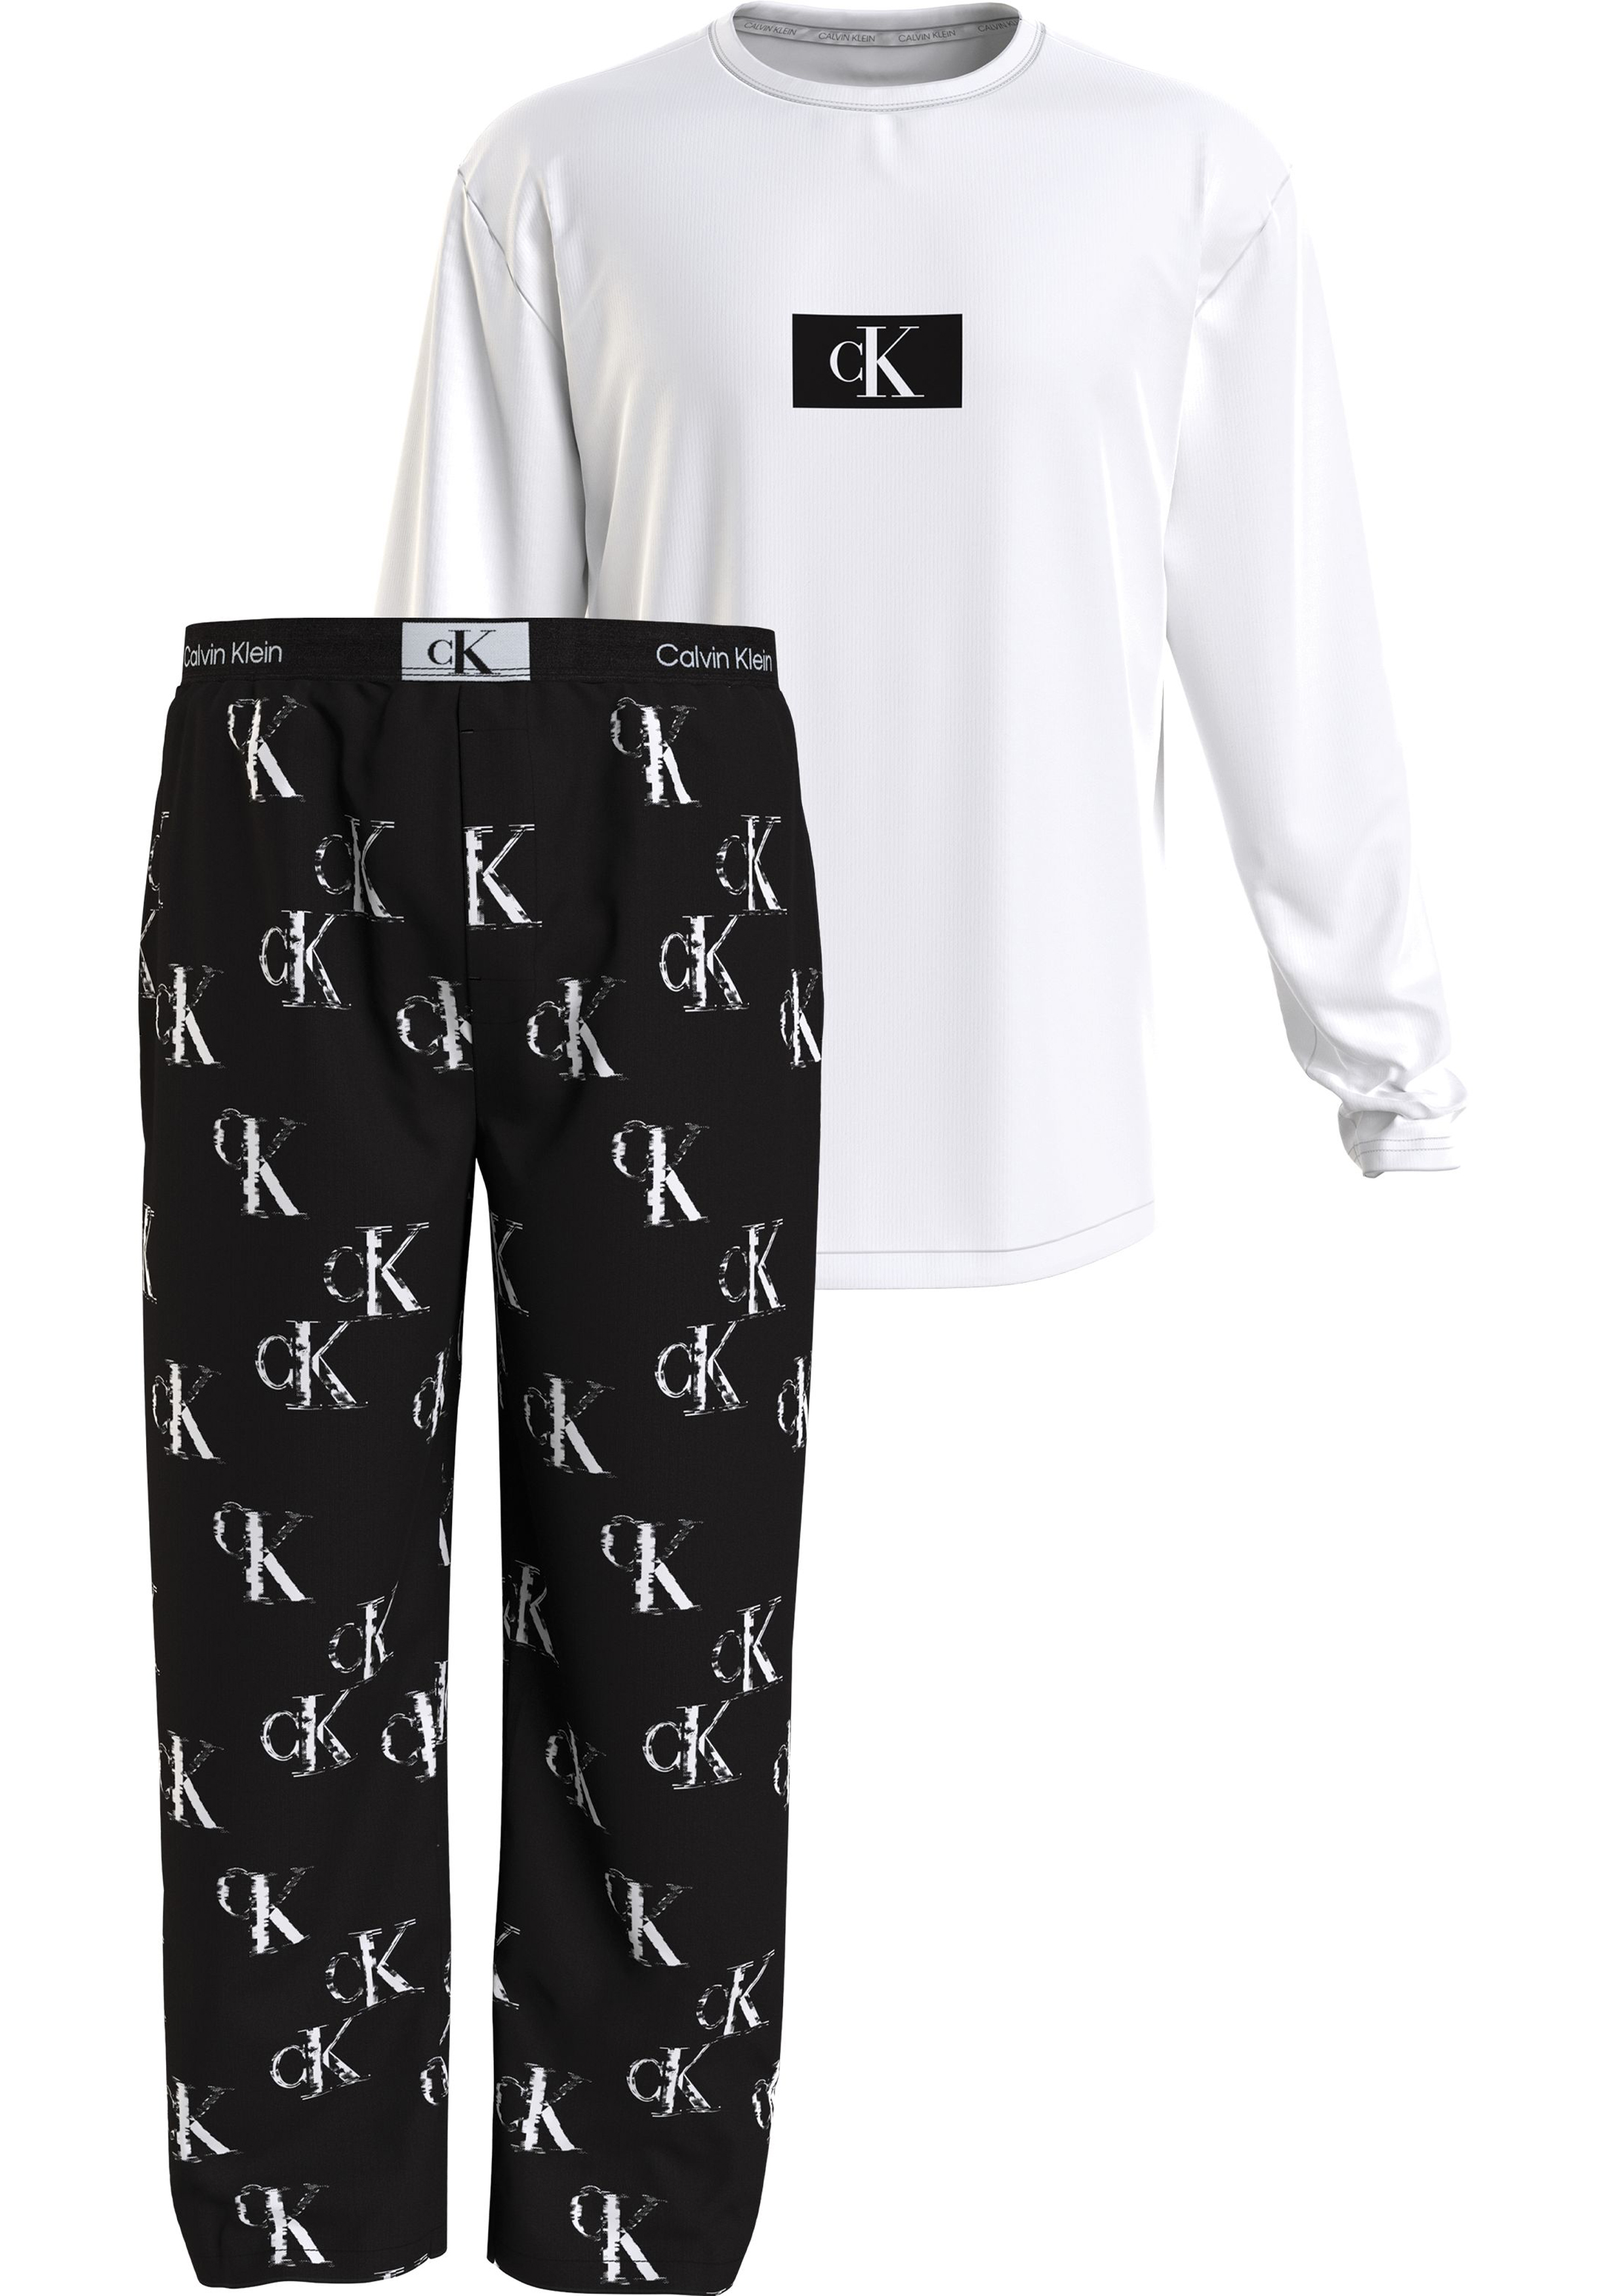 Calvin Klein heren pyjama O-hals, wit shirt, logo print broek zwart met wit